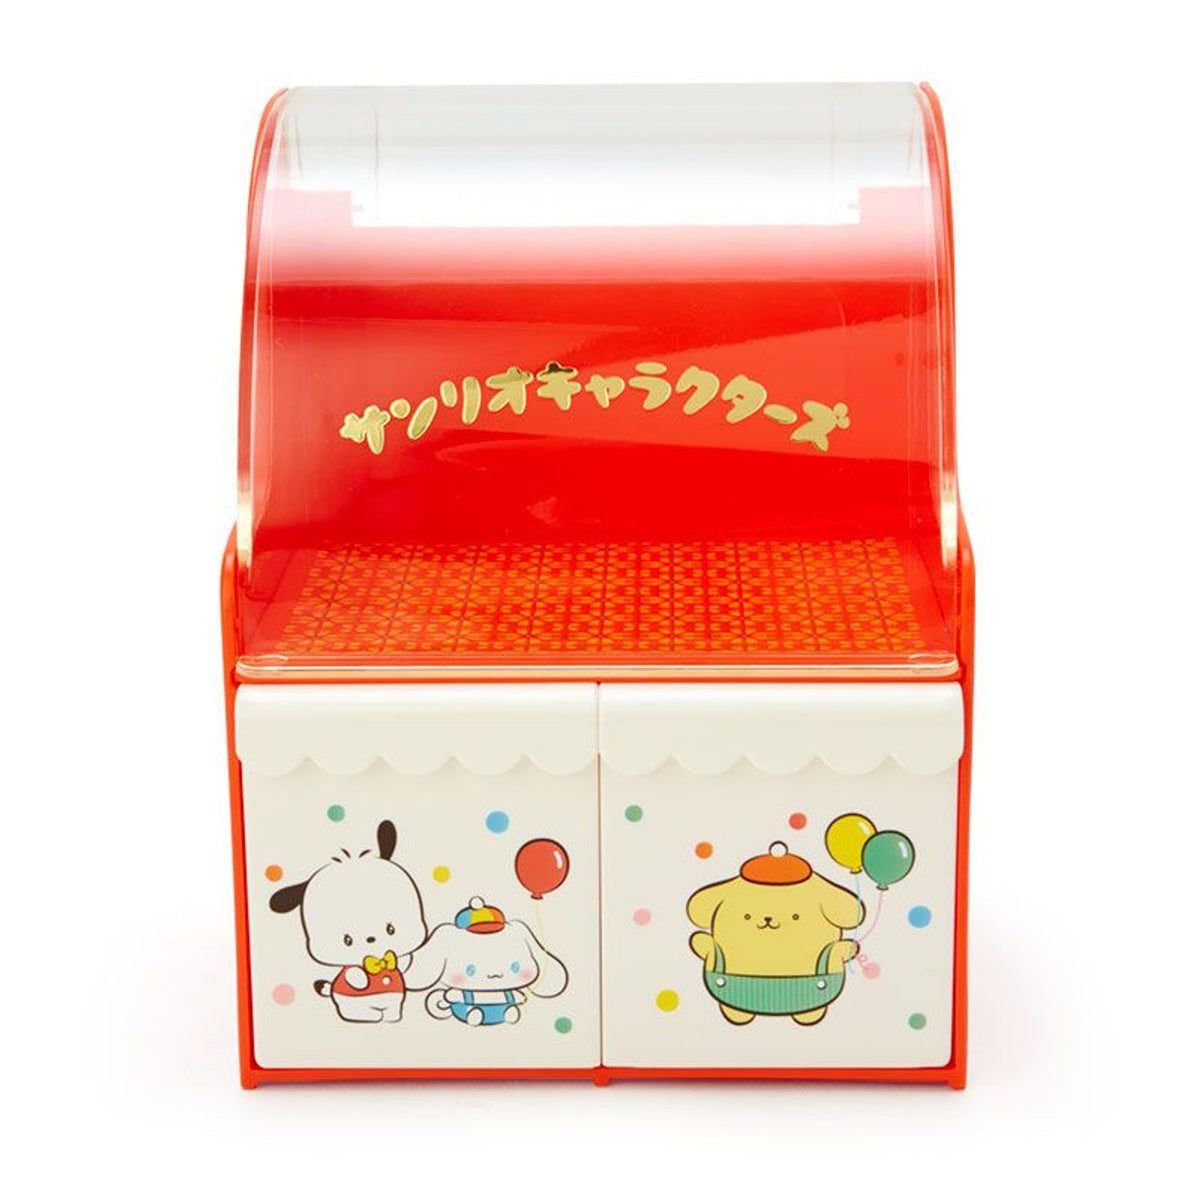 Sanrio Characters Storage Box